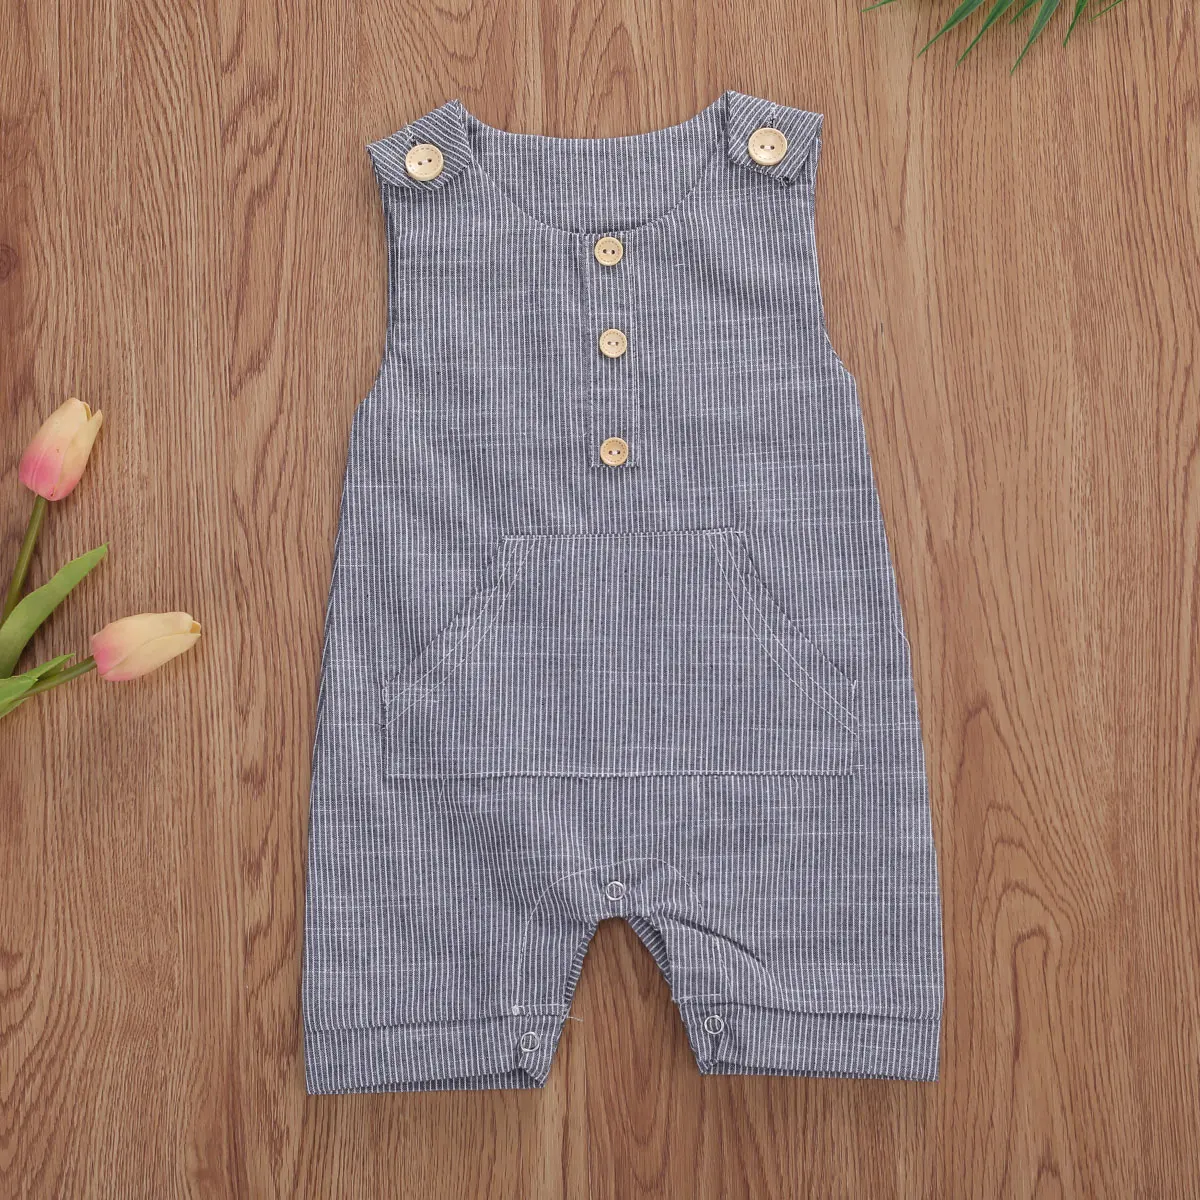 2020 התינוק קיץ בגדי התינוק הנולד בנים כפתורים פסים רומפר אופנה שרוולים רומפר כותנה פשתן סרבל - 3